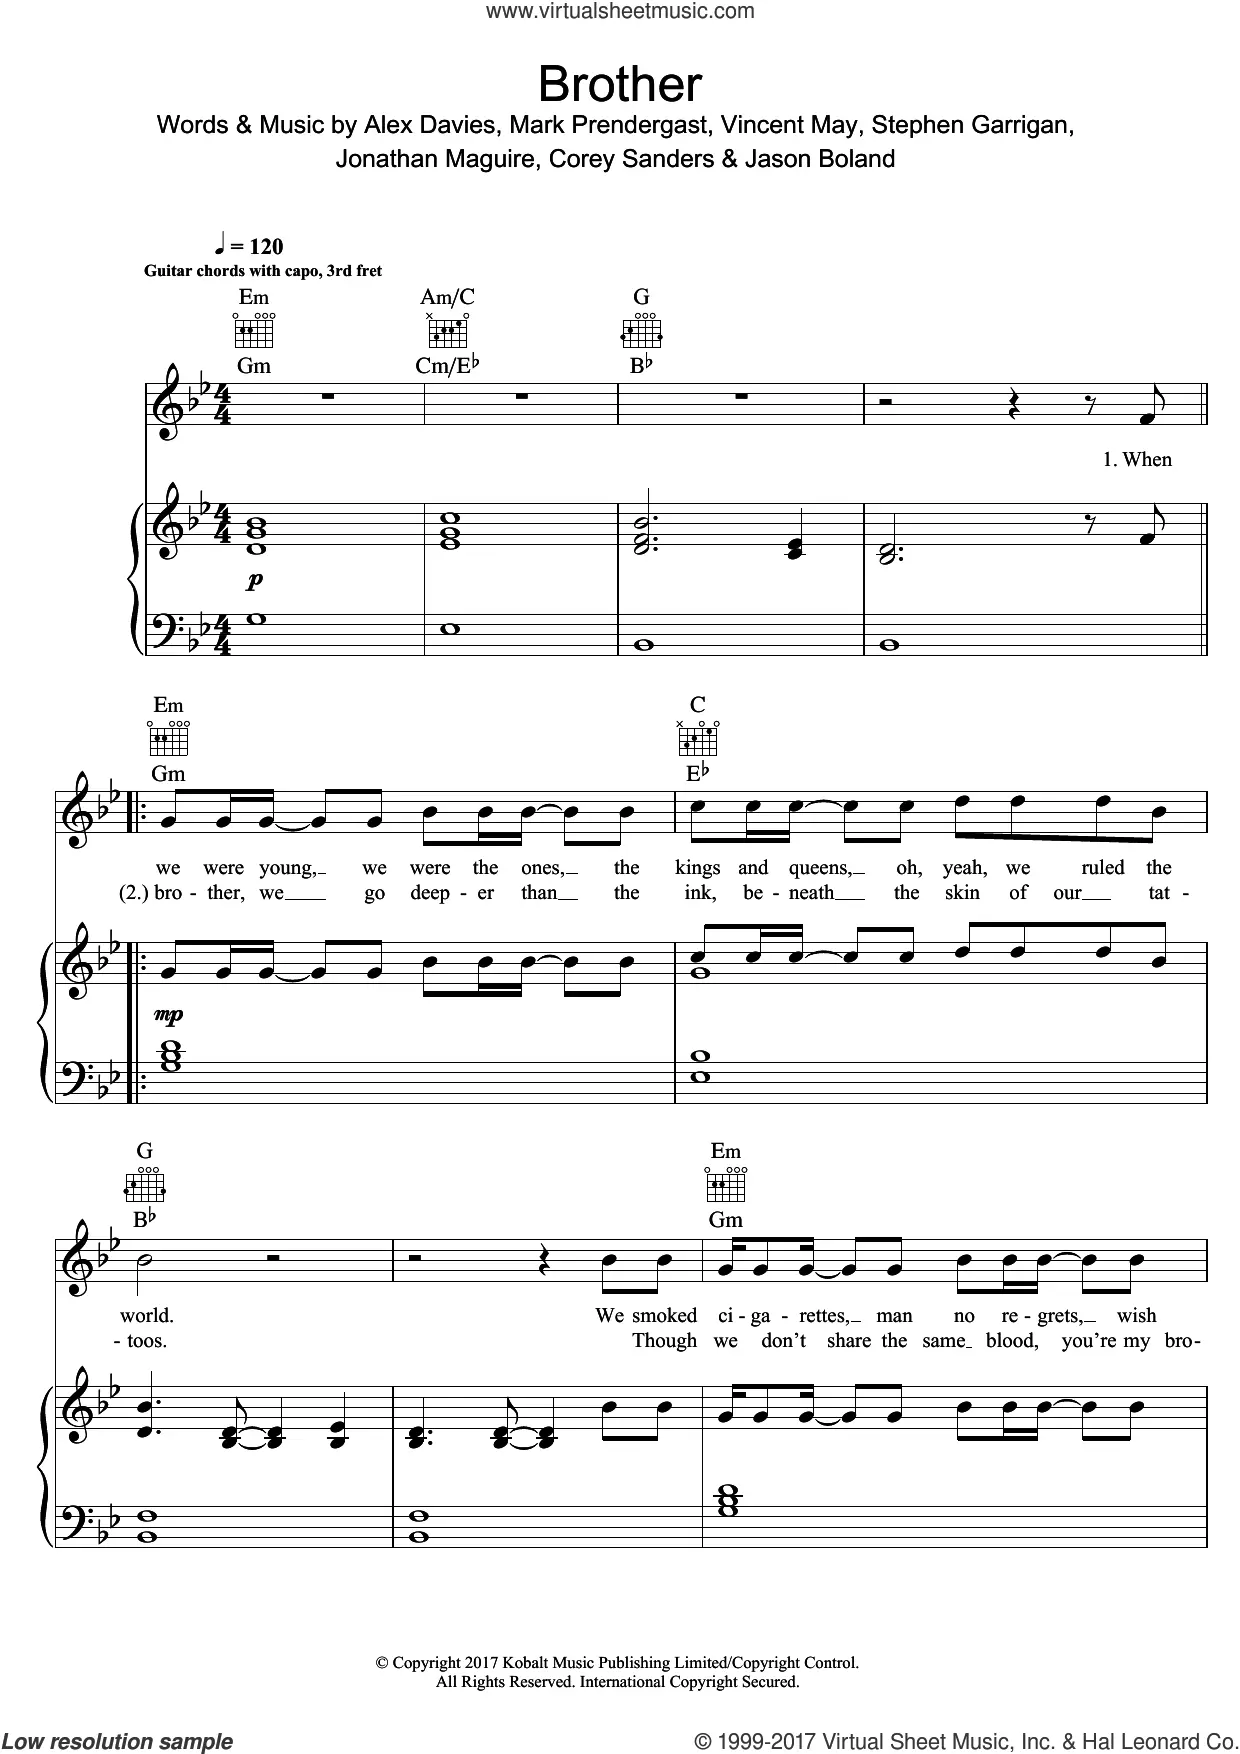 Chord: Play the Game - Kodaline - tab, song lyric, sheet, guitar, ukulele